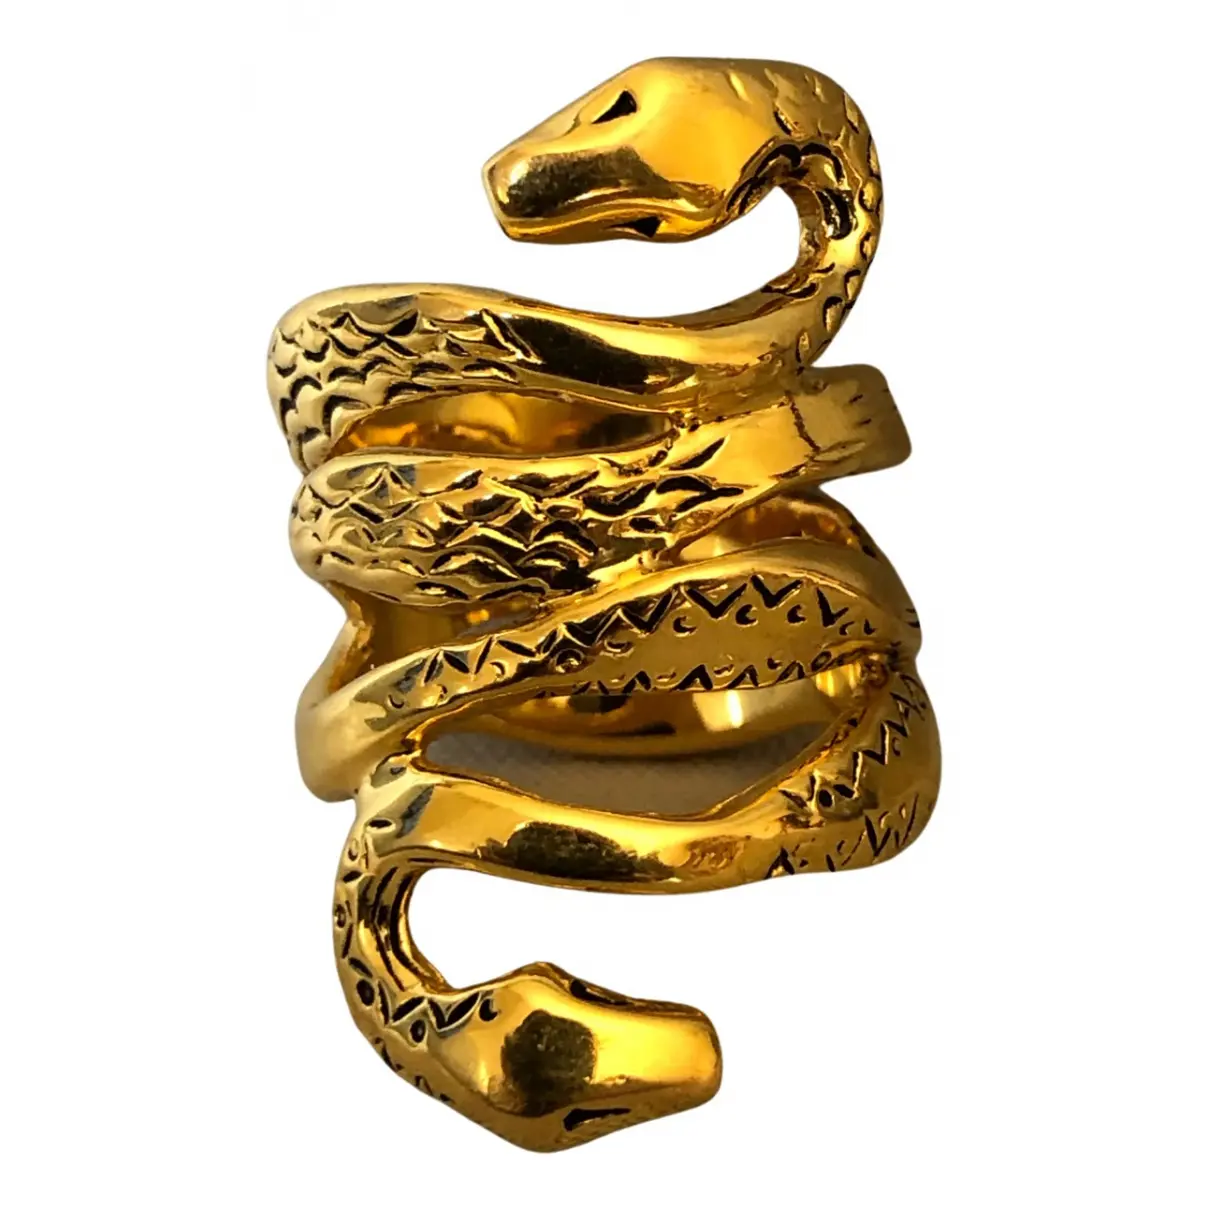 Serpent ring Aurelie Bidermann